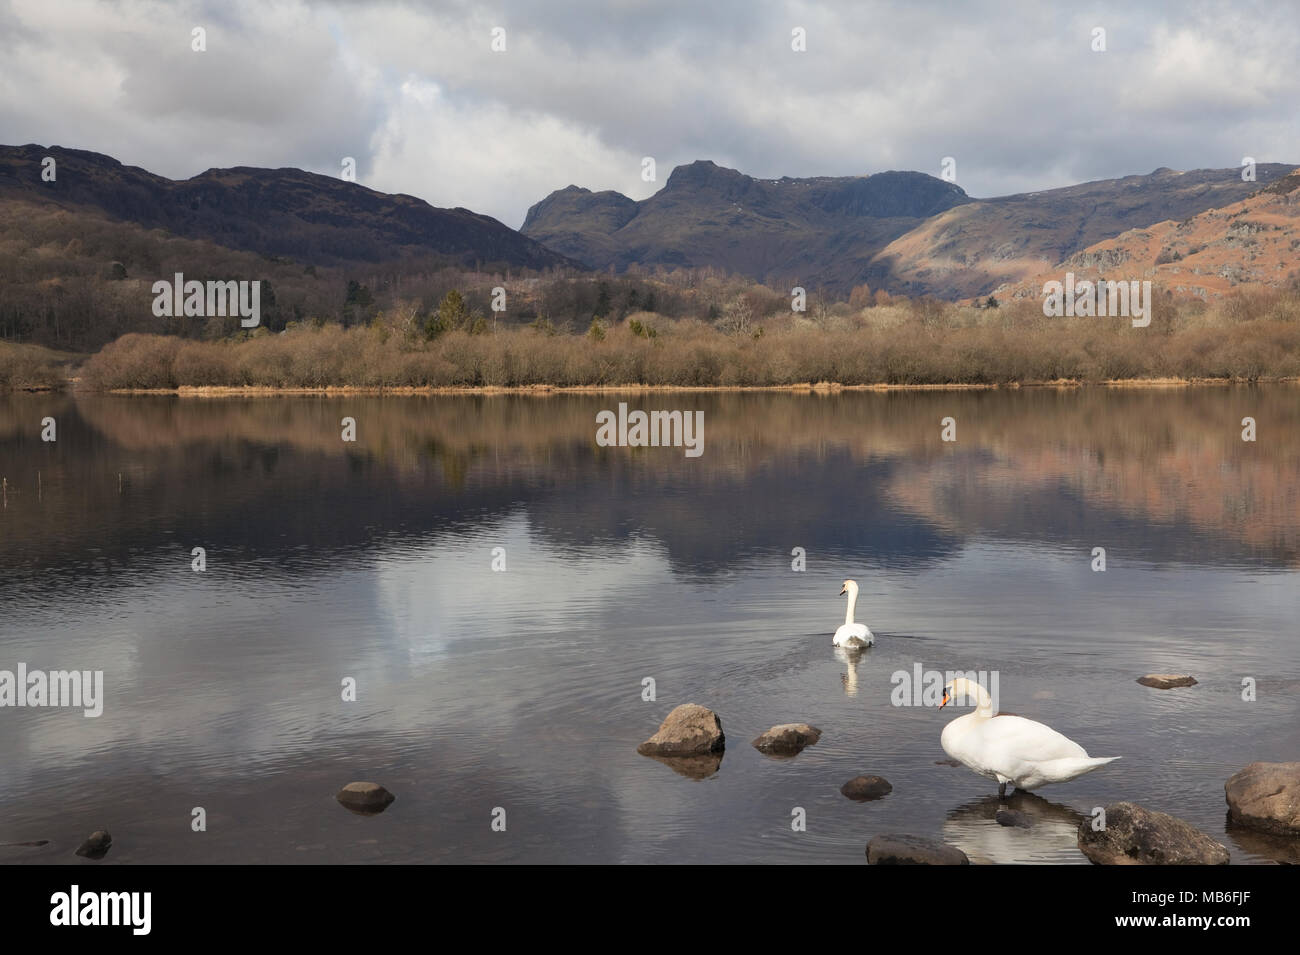 Cigni sul lago d'acqua Elter e sui Langdale Pikes, Lake District, Regno Unito Foto Stock